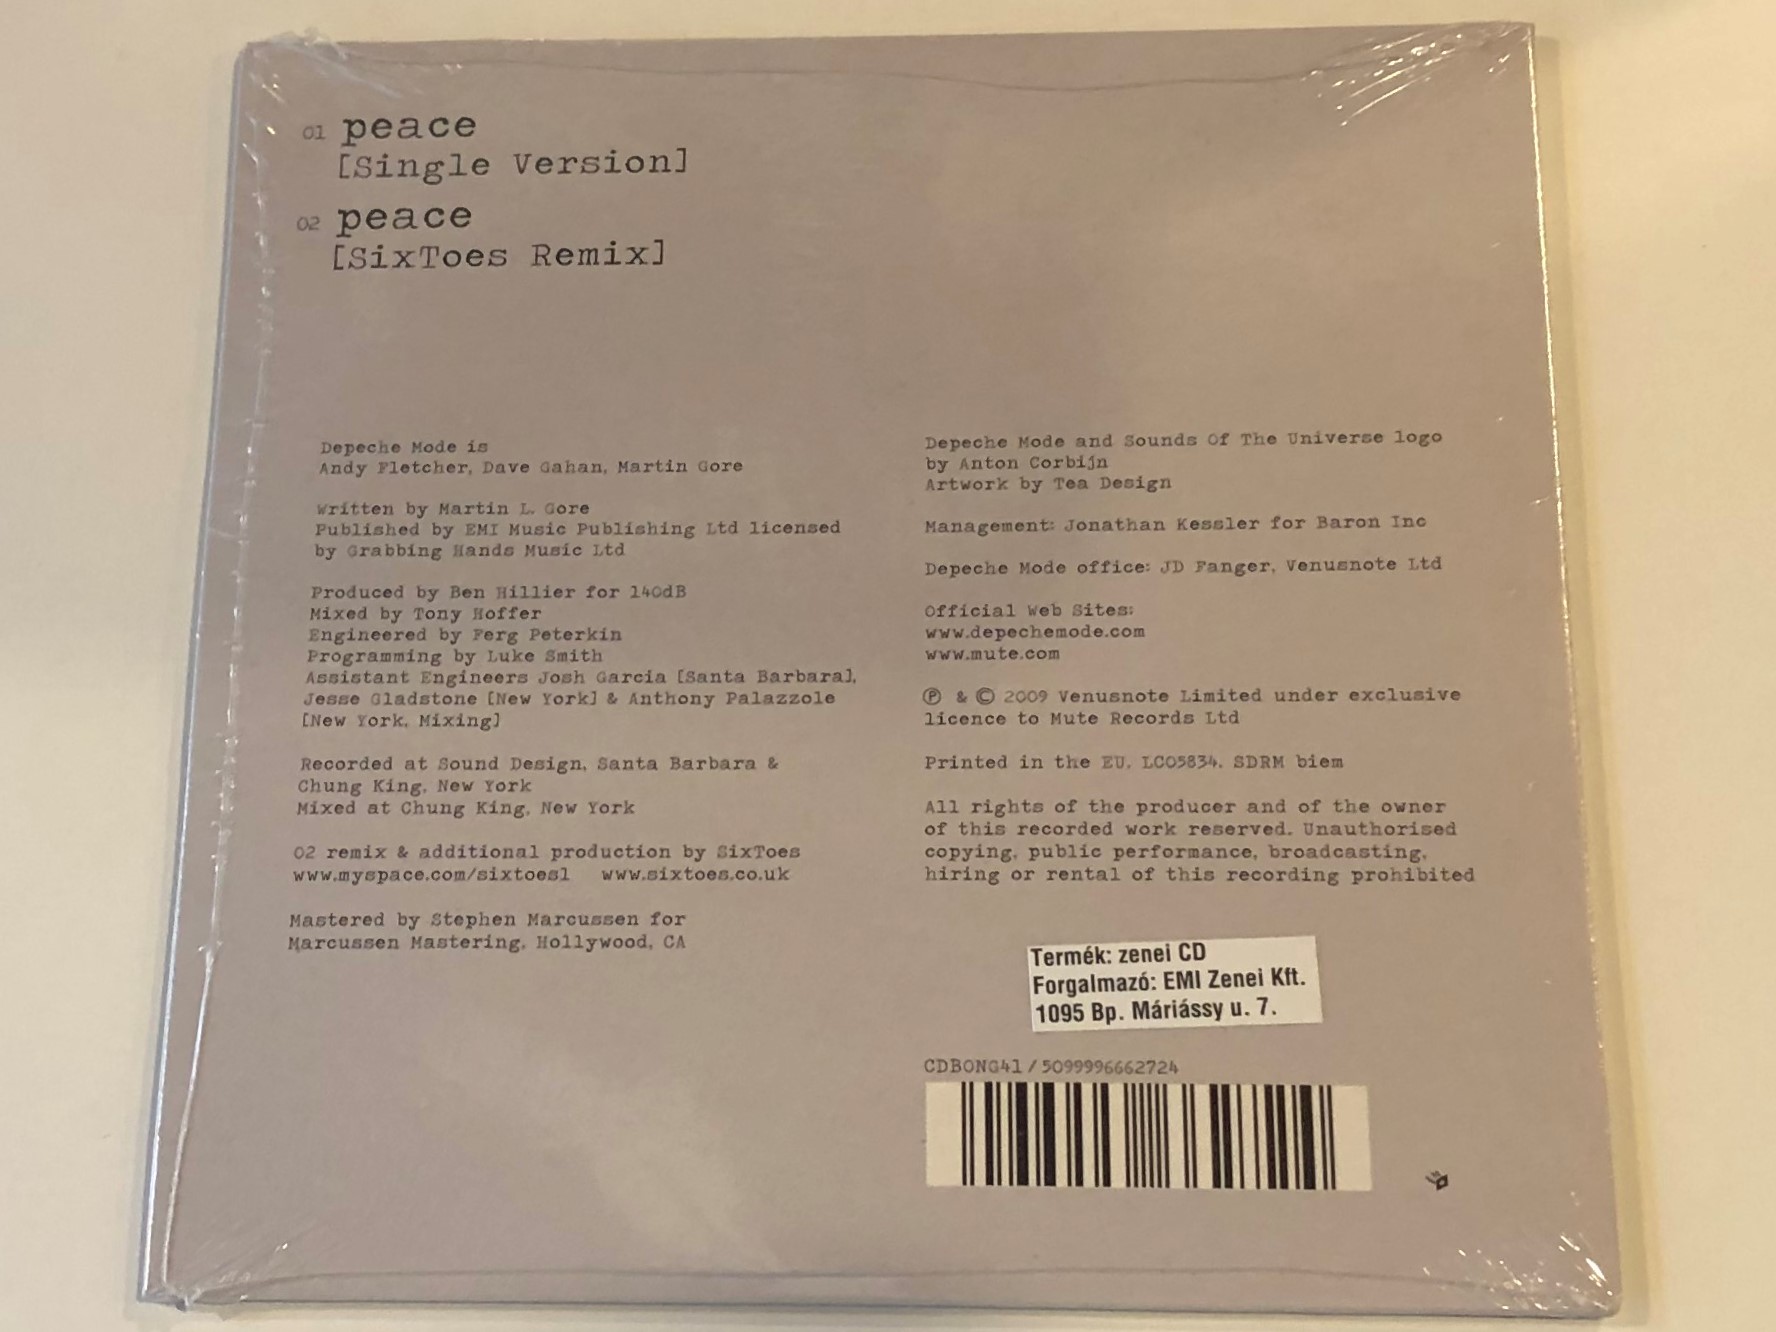 depeche-mode-peace-mute-audio-cd-2009-cdbong41-2-.jpg